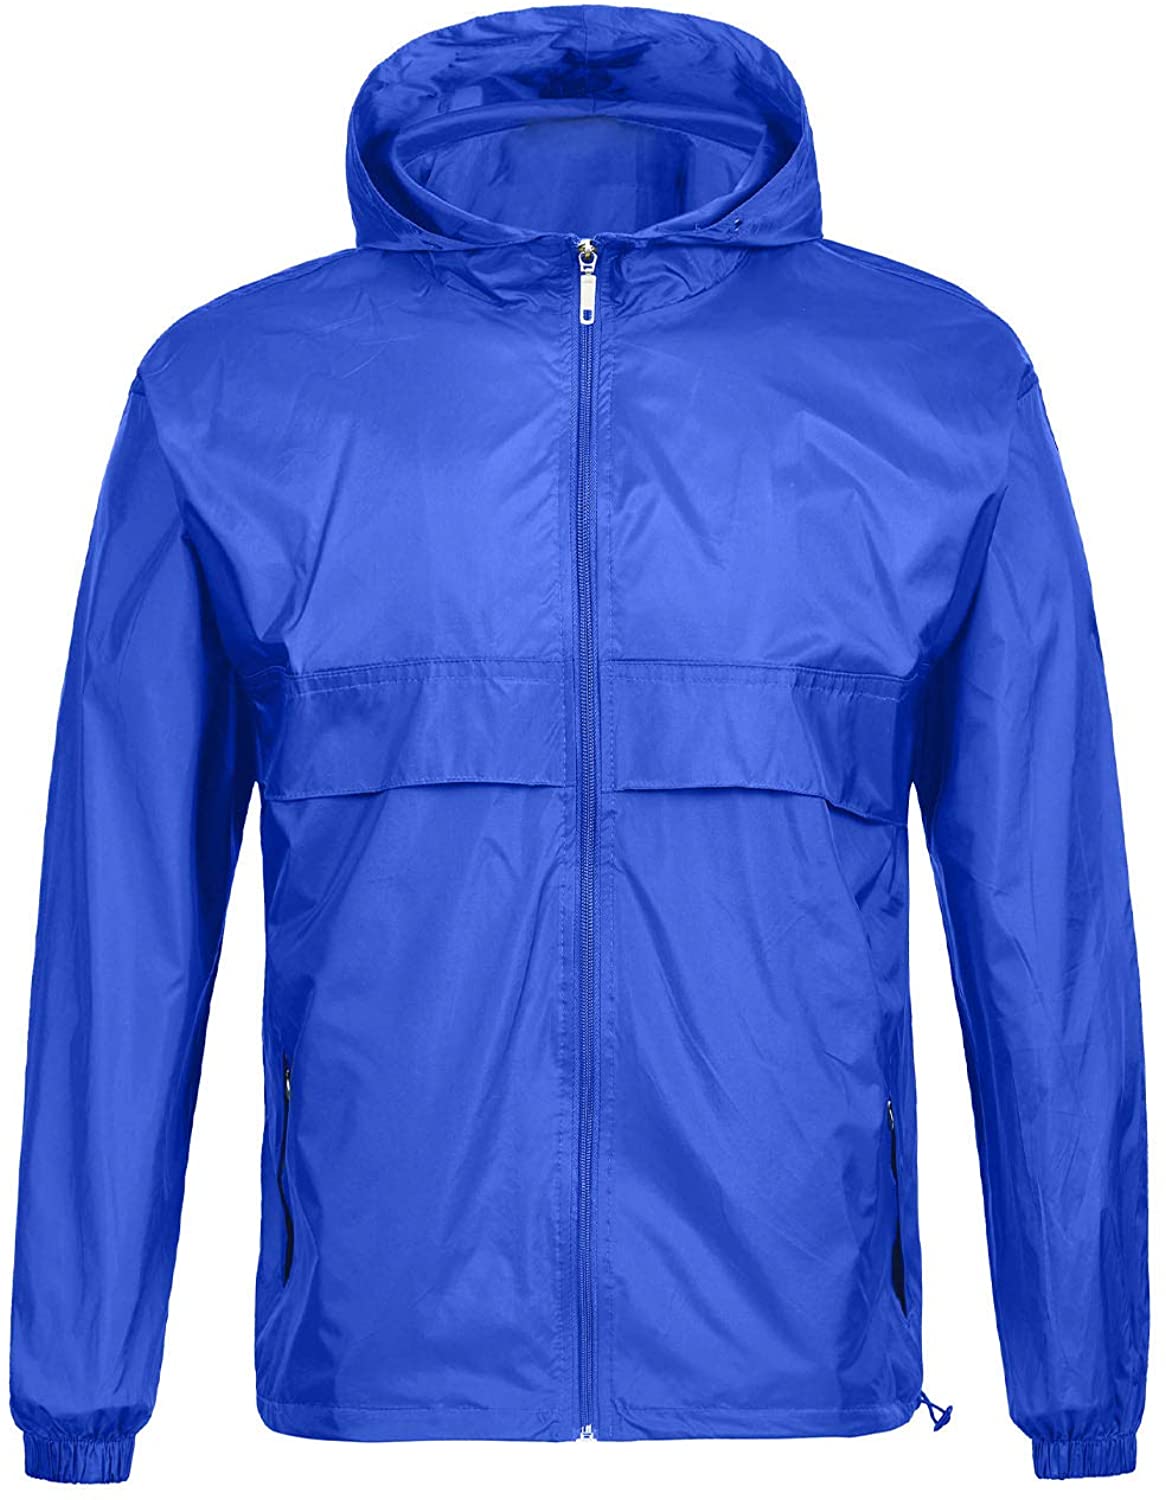 SWISSWELL Waterproof Windbreaker Rain Jacket Mens Lightweight Hooded Raincoat